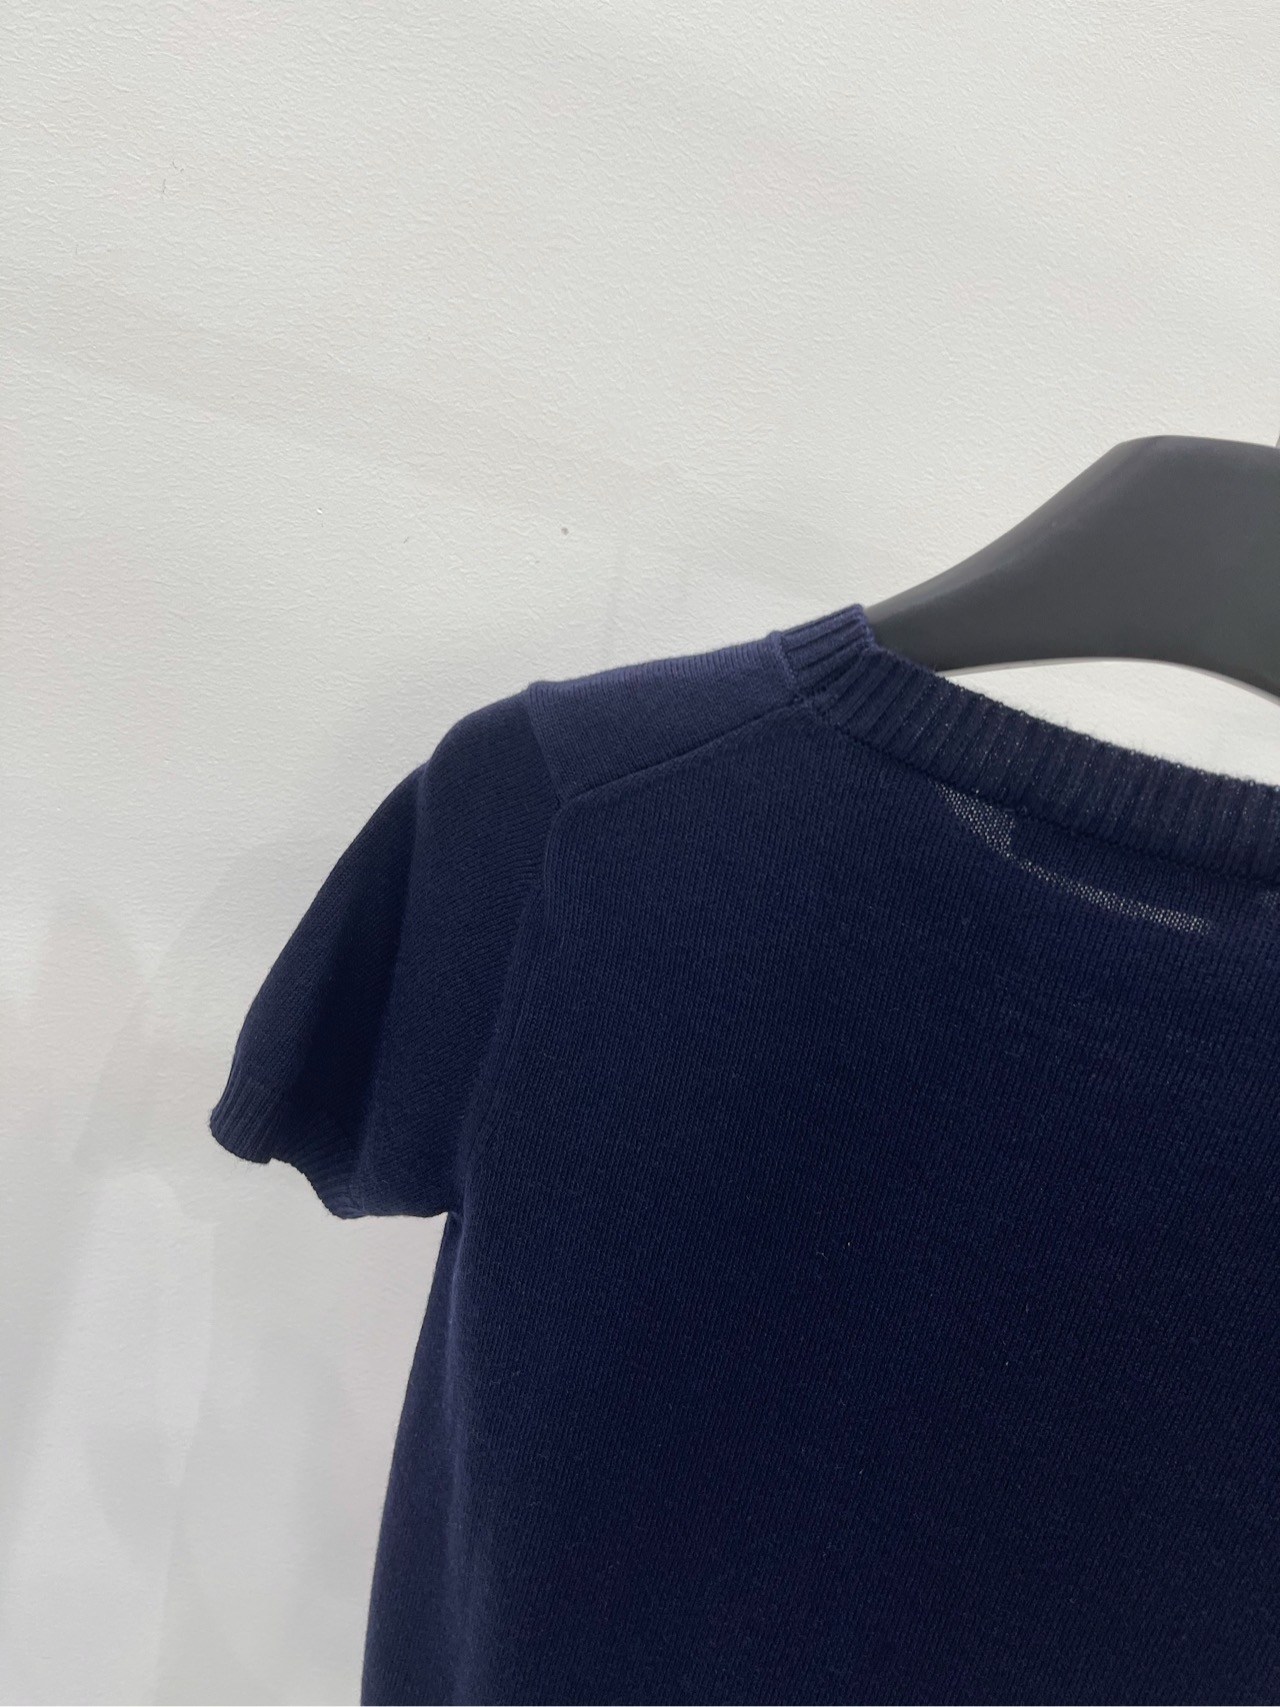 ミュウミュウローファー激安通販 Tシャツ 半袖 トップス 純綿 カジュアル シンプル ゆったり 人気販売 ブルー_6